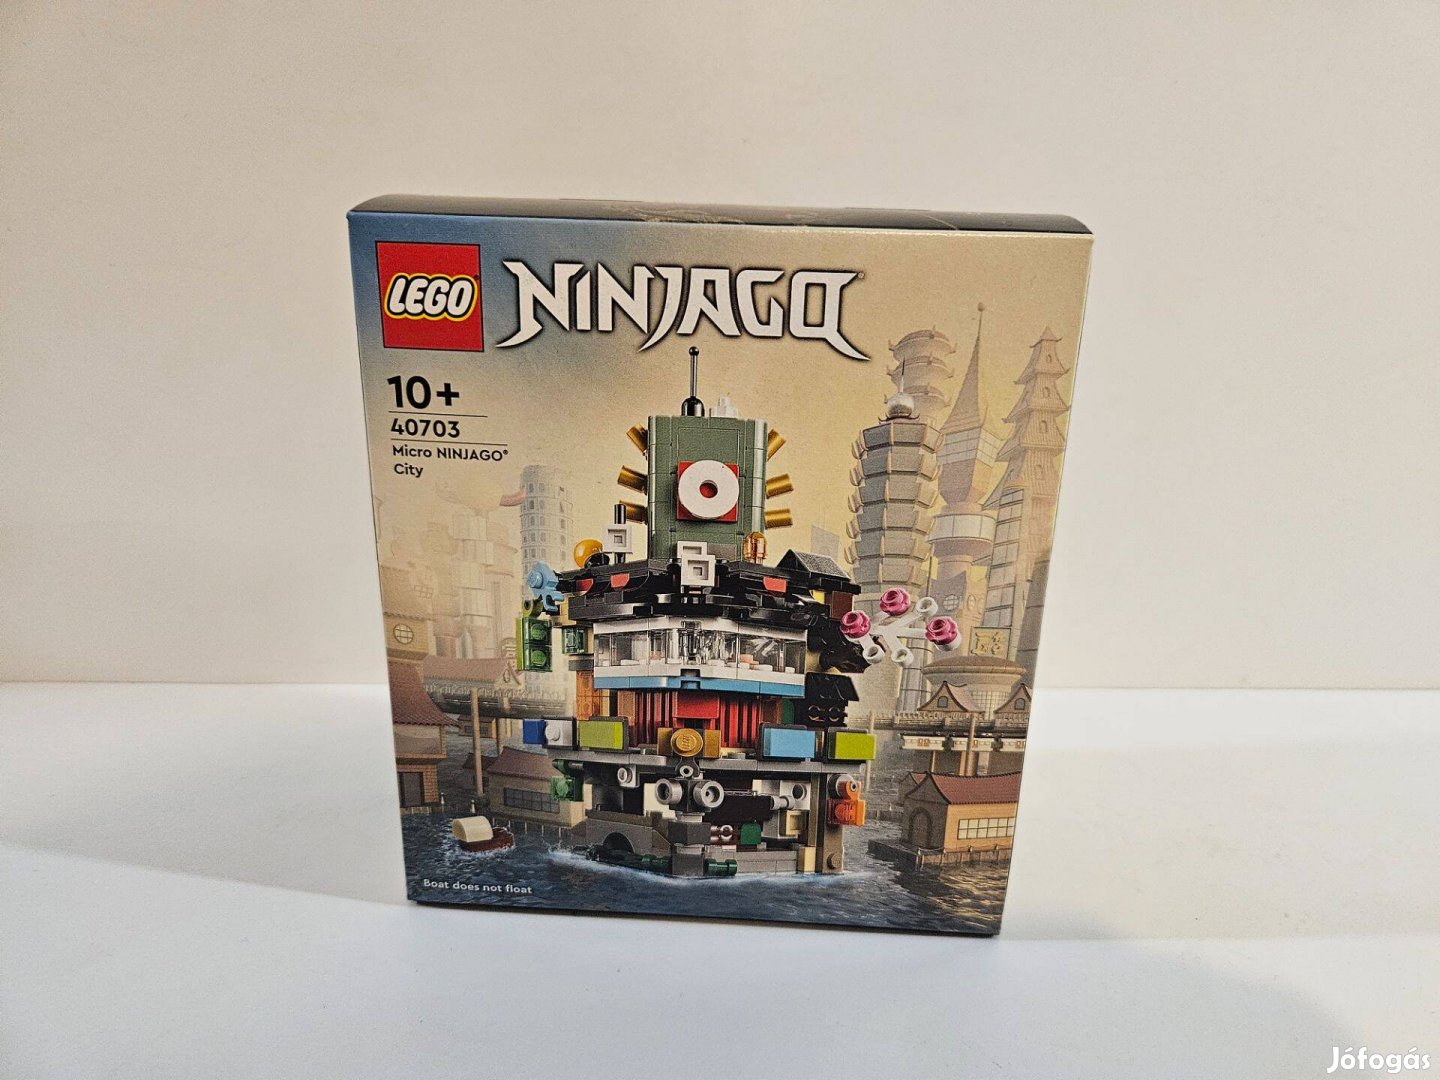 LEGO Ninjago - 40703 - Micro Ninjago City - Új, bontatlan